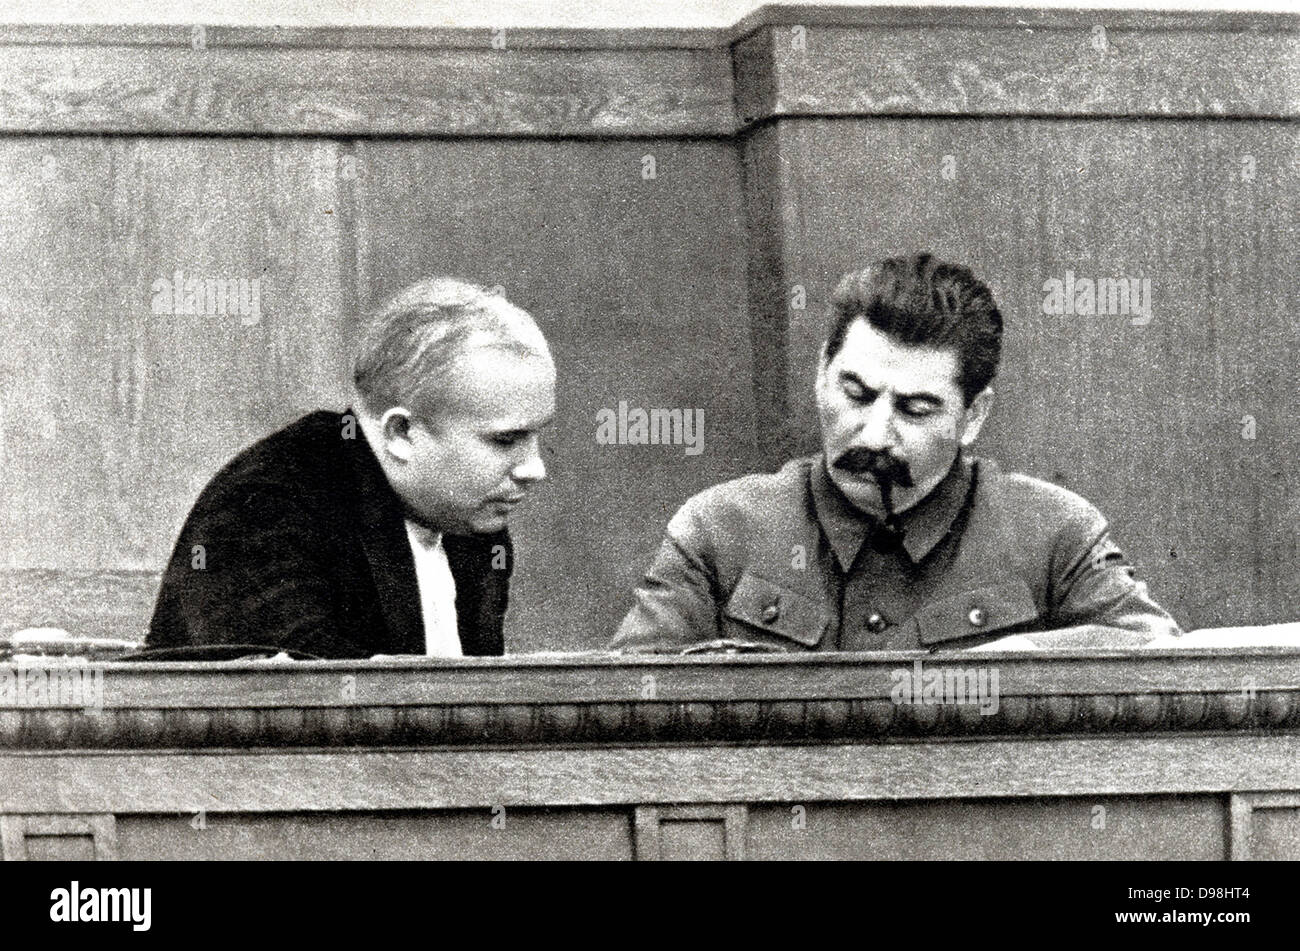 Joseph Staline et Nikita Khrouchtchev en 1936. 1878 - 1953, Staline était le chef de la Russie soviétique Nikita Khrouchtchev.1924-1953 1894 - 1971, était chef de la Russie soviétique à partir de 1953-1964. Banque D'Images